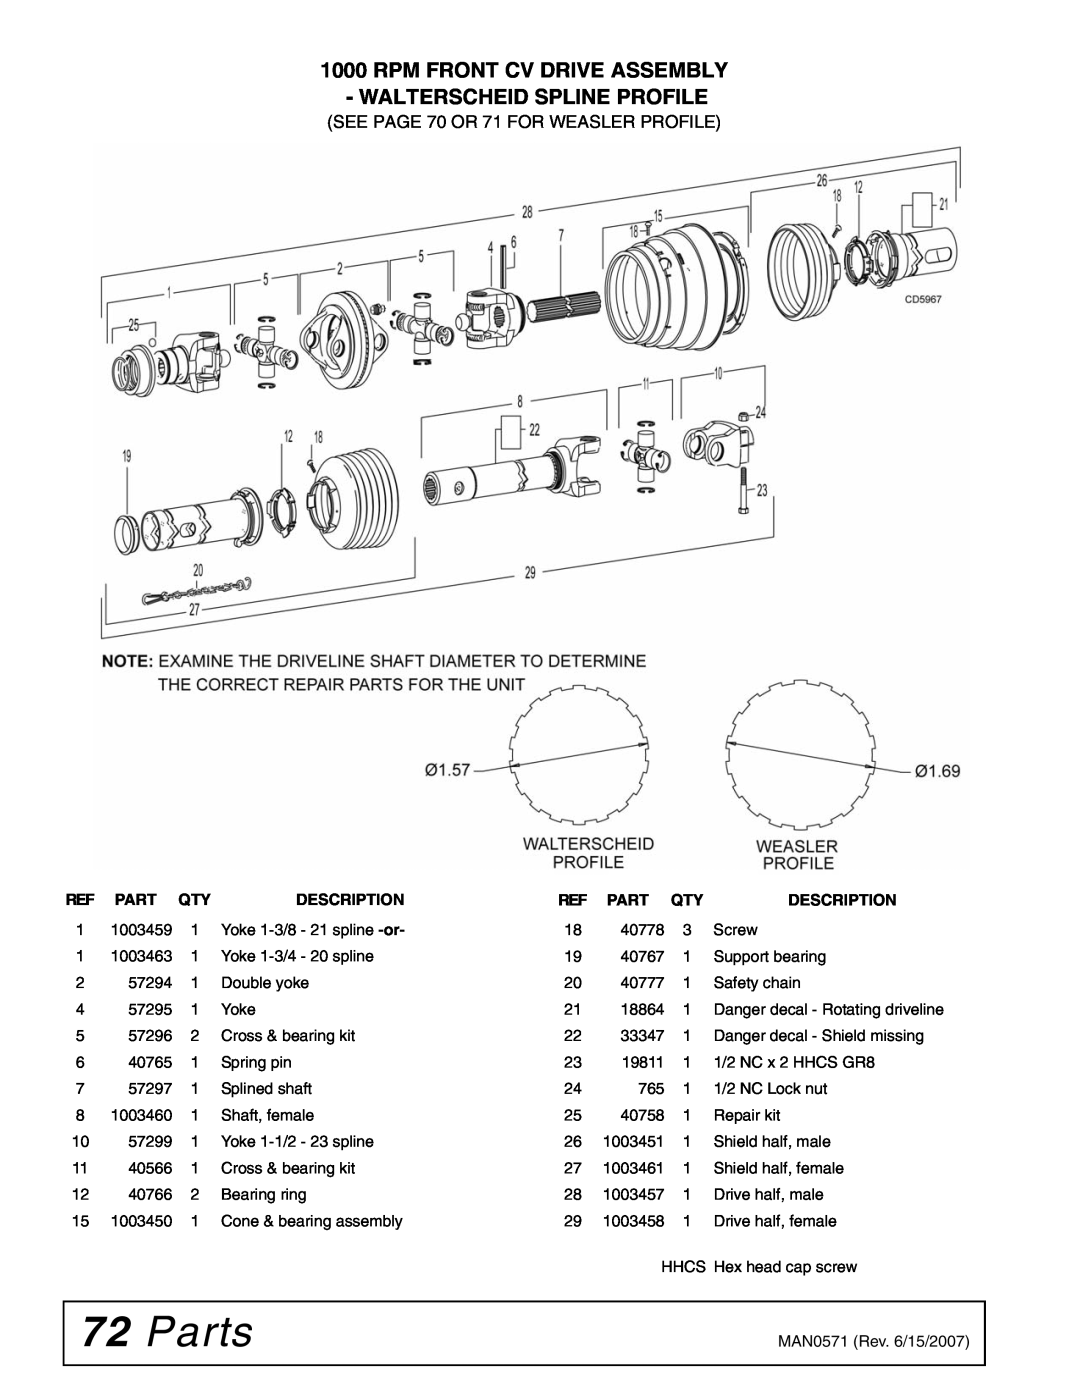 Woods Equipment DSO1260Q, DS1260, DS1440Q Parts, Rpm Front Cv Drive Assembly - Walterscheid Spline Profile, Description 